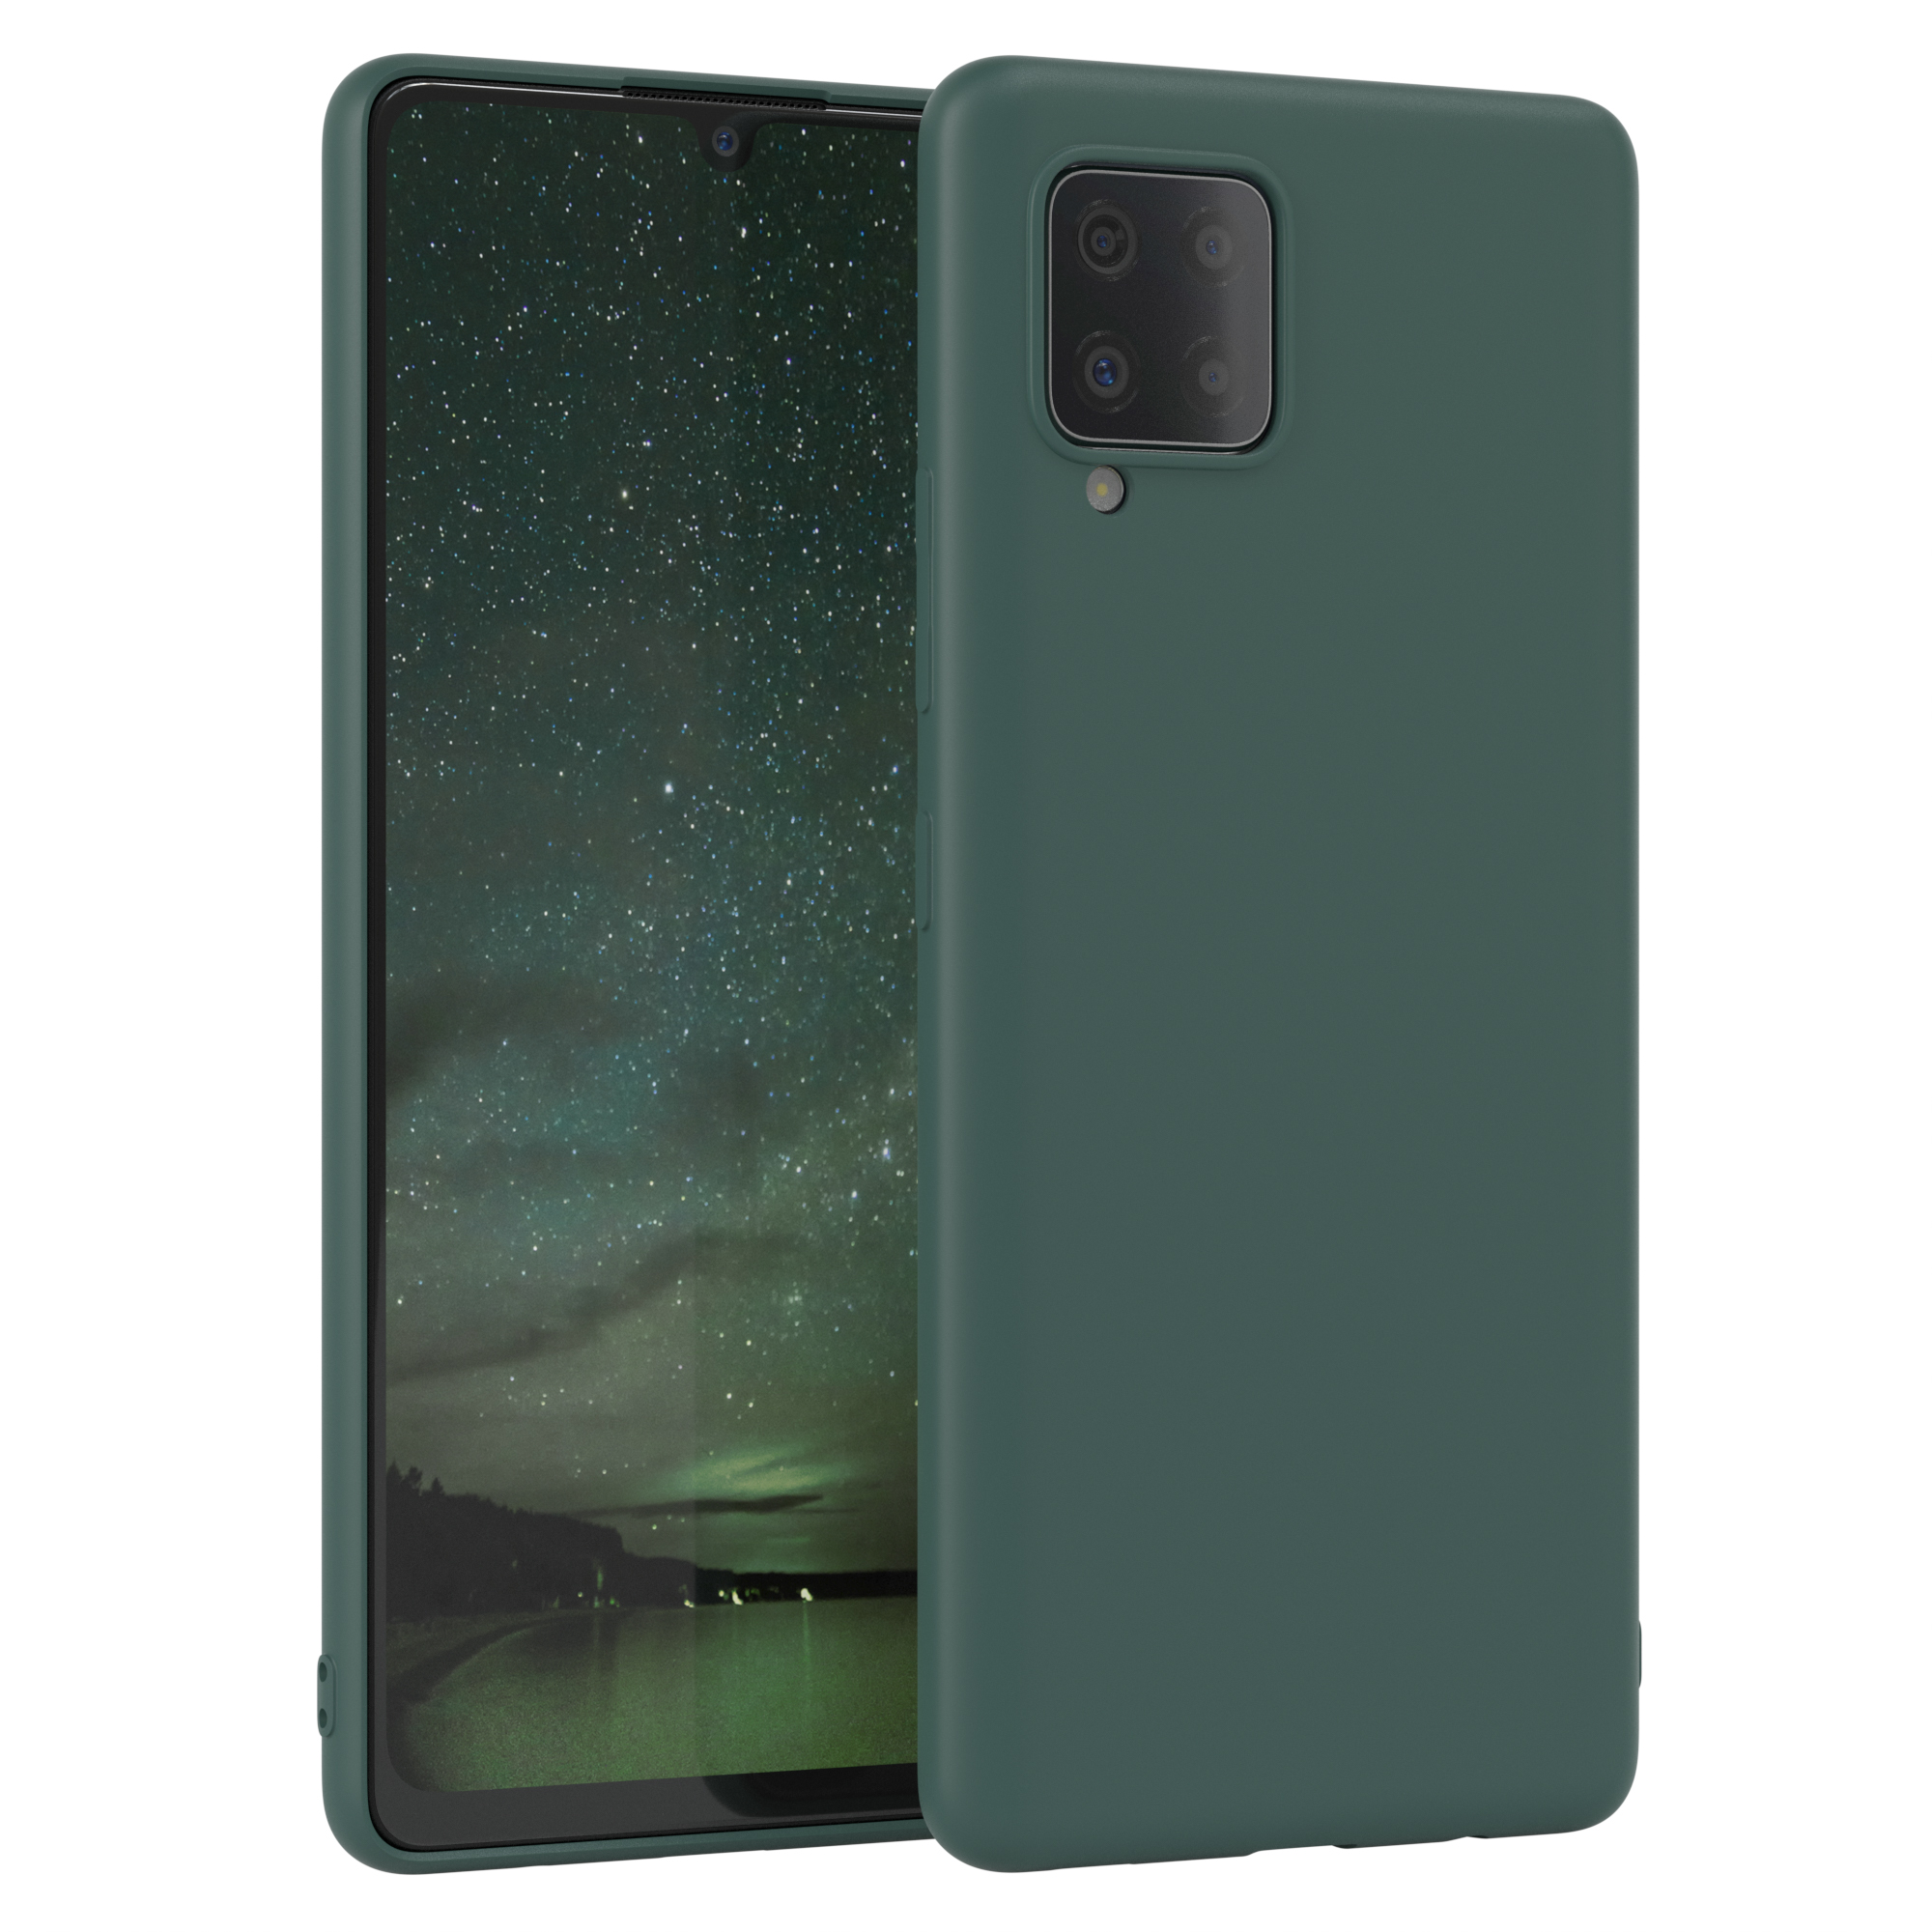 Silikon TPU Galaxy / Backcover, Matt, Nachtgrün Grün A42 Handycase 5G, CASE EAZY Samsung,